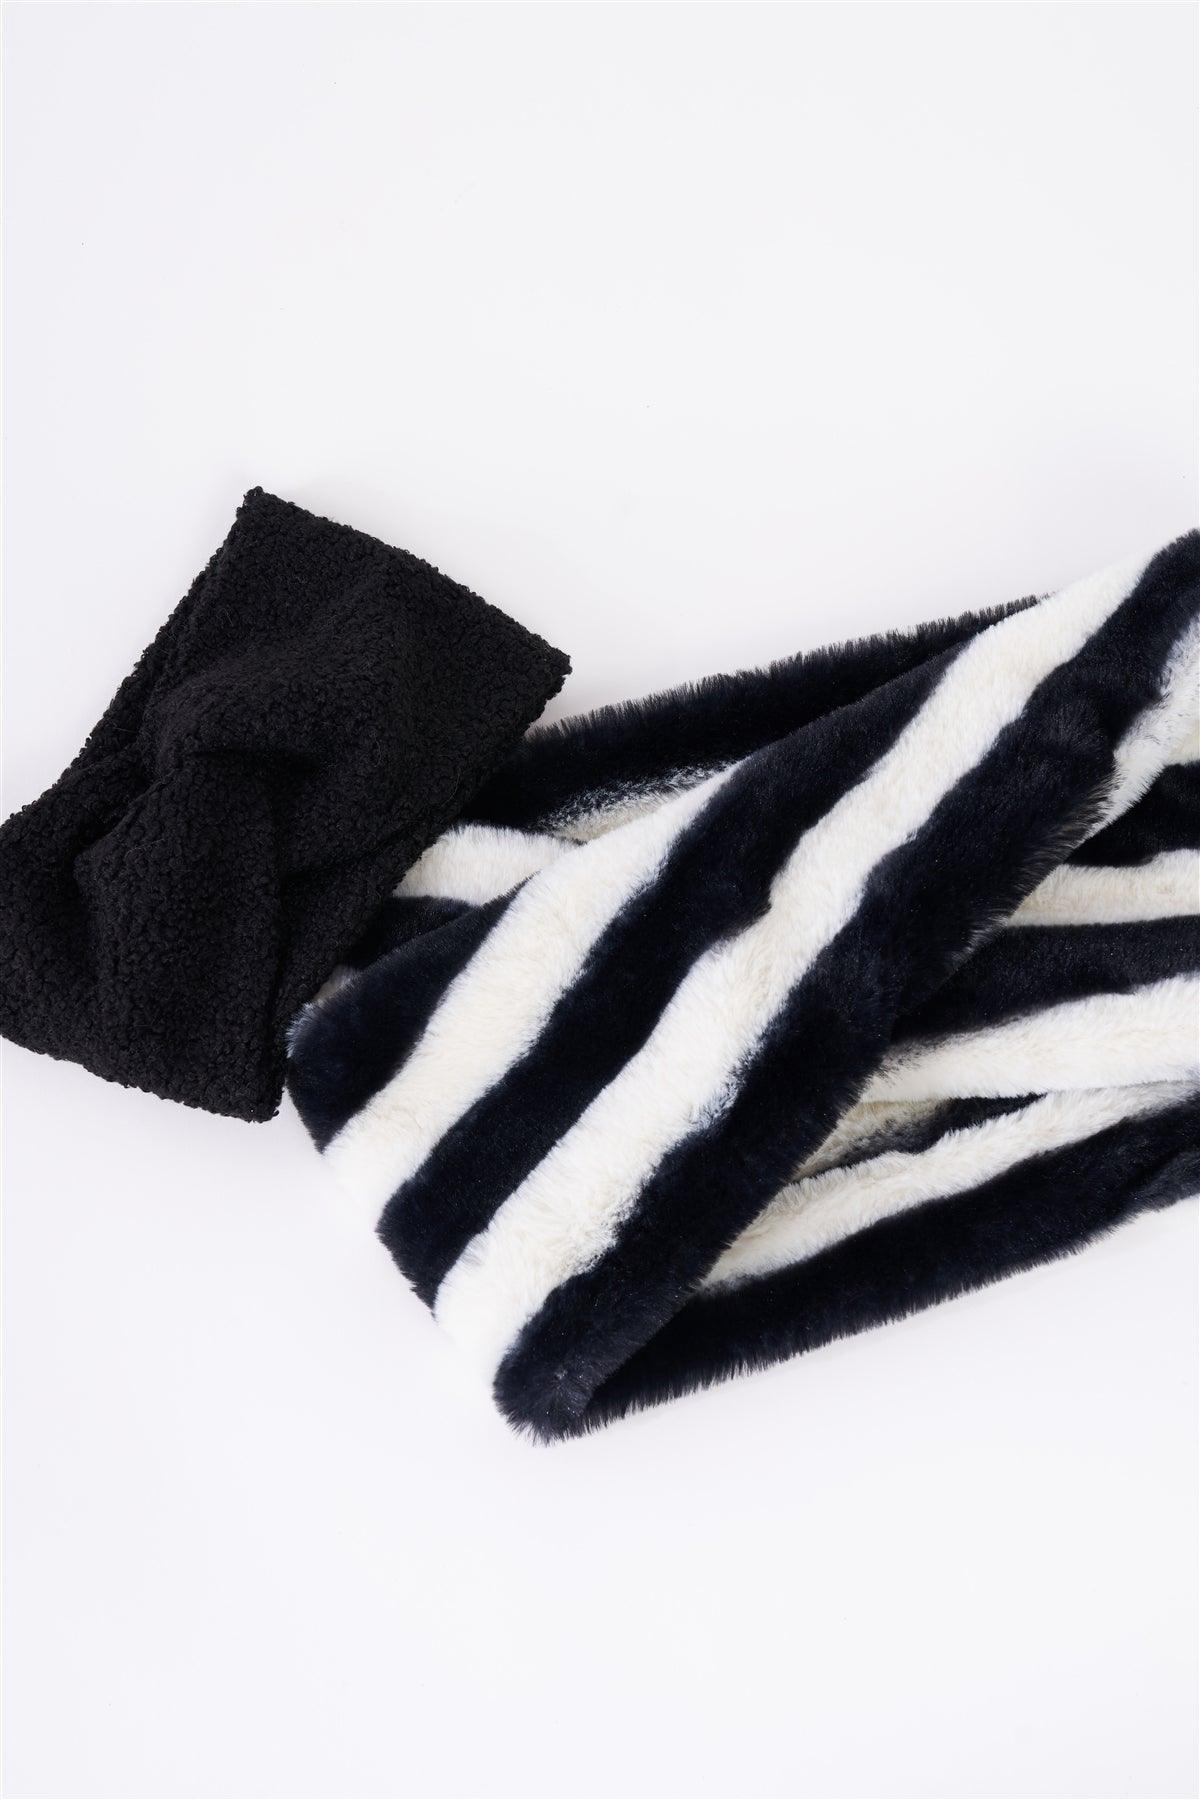 Black Faux Shearling Fur Turban Twist Winter Headband /3 Pieces